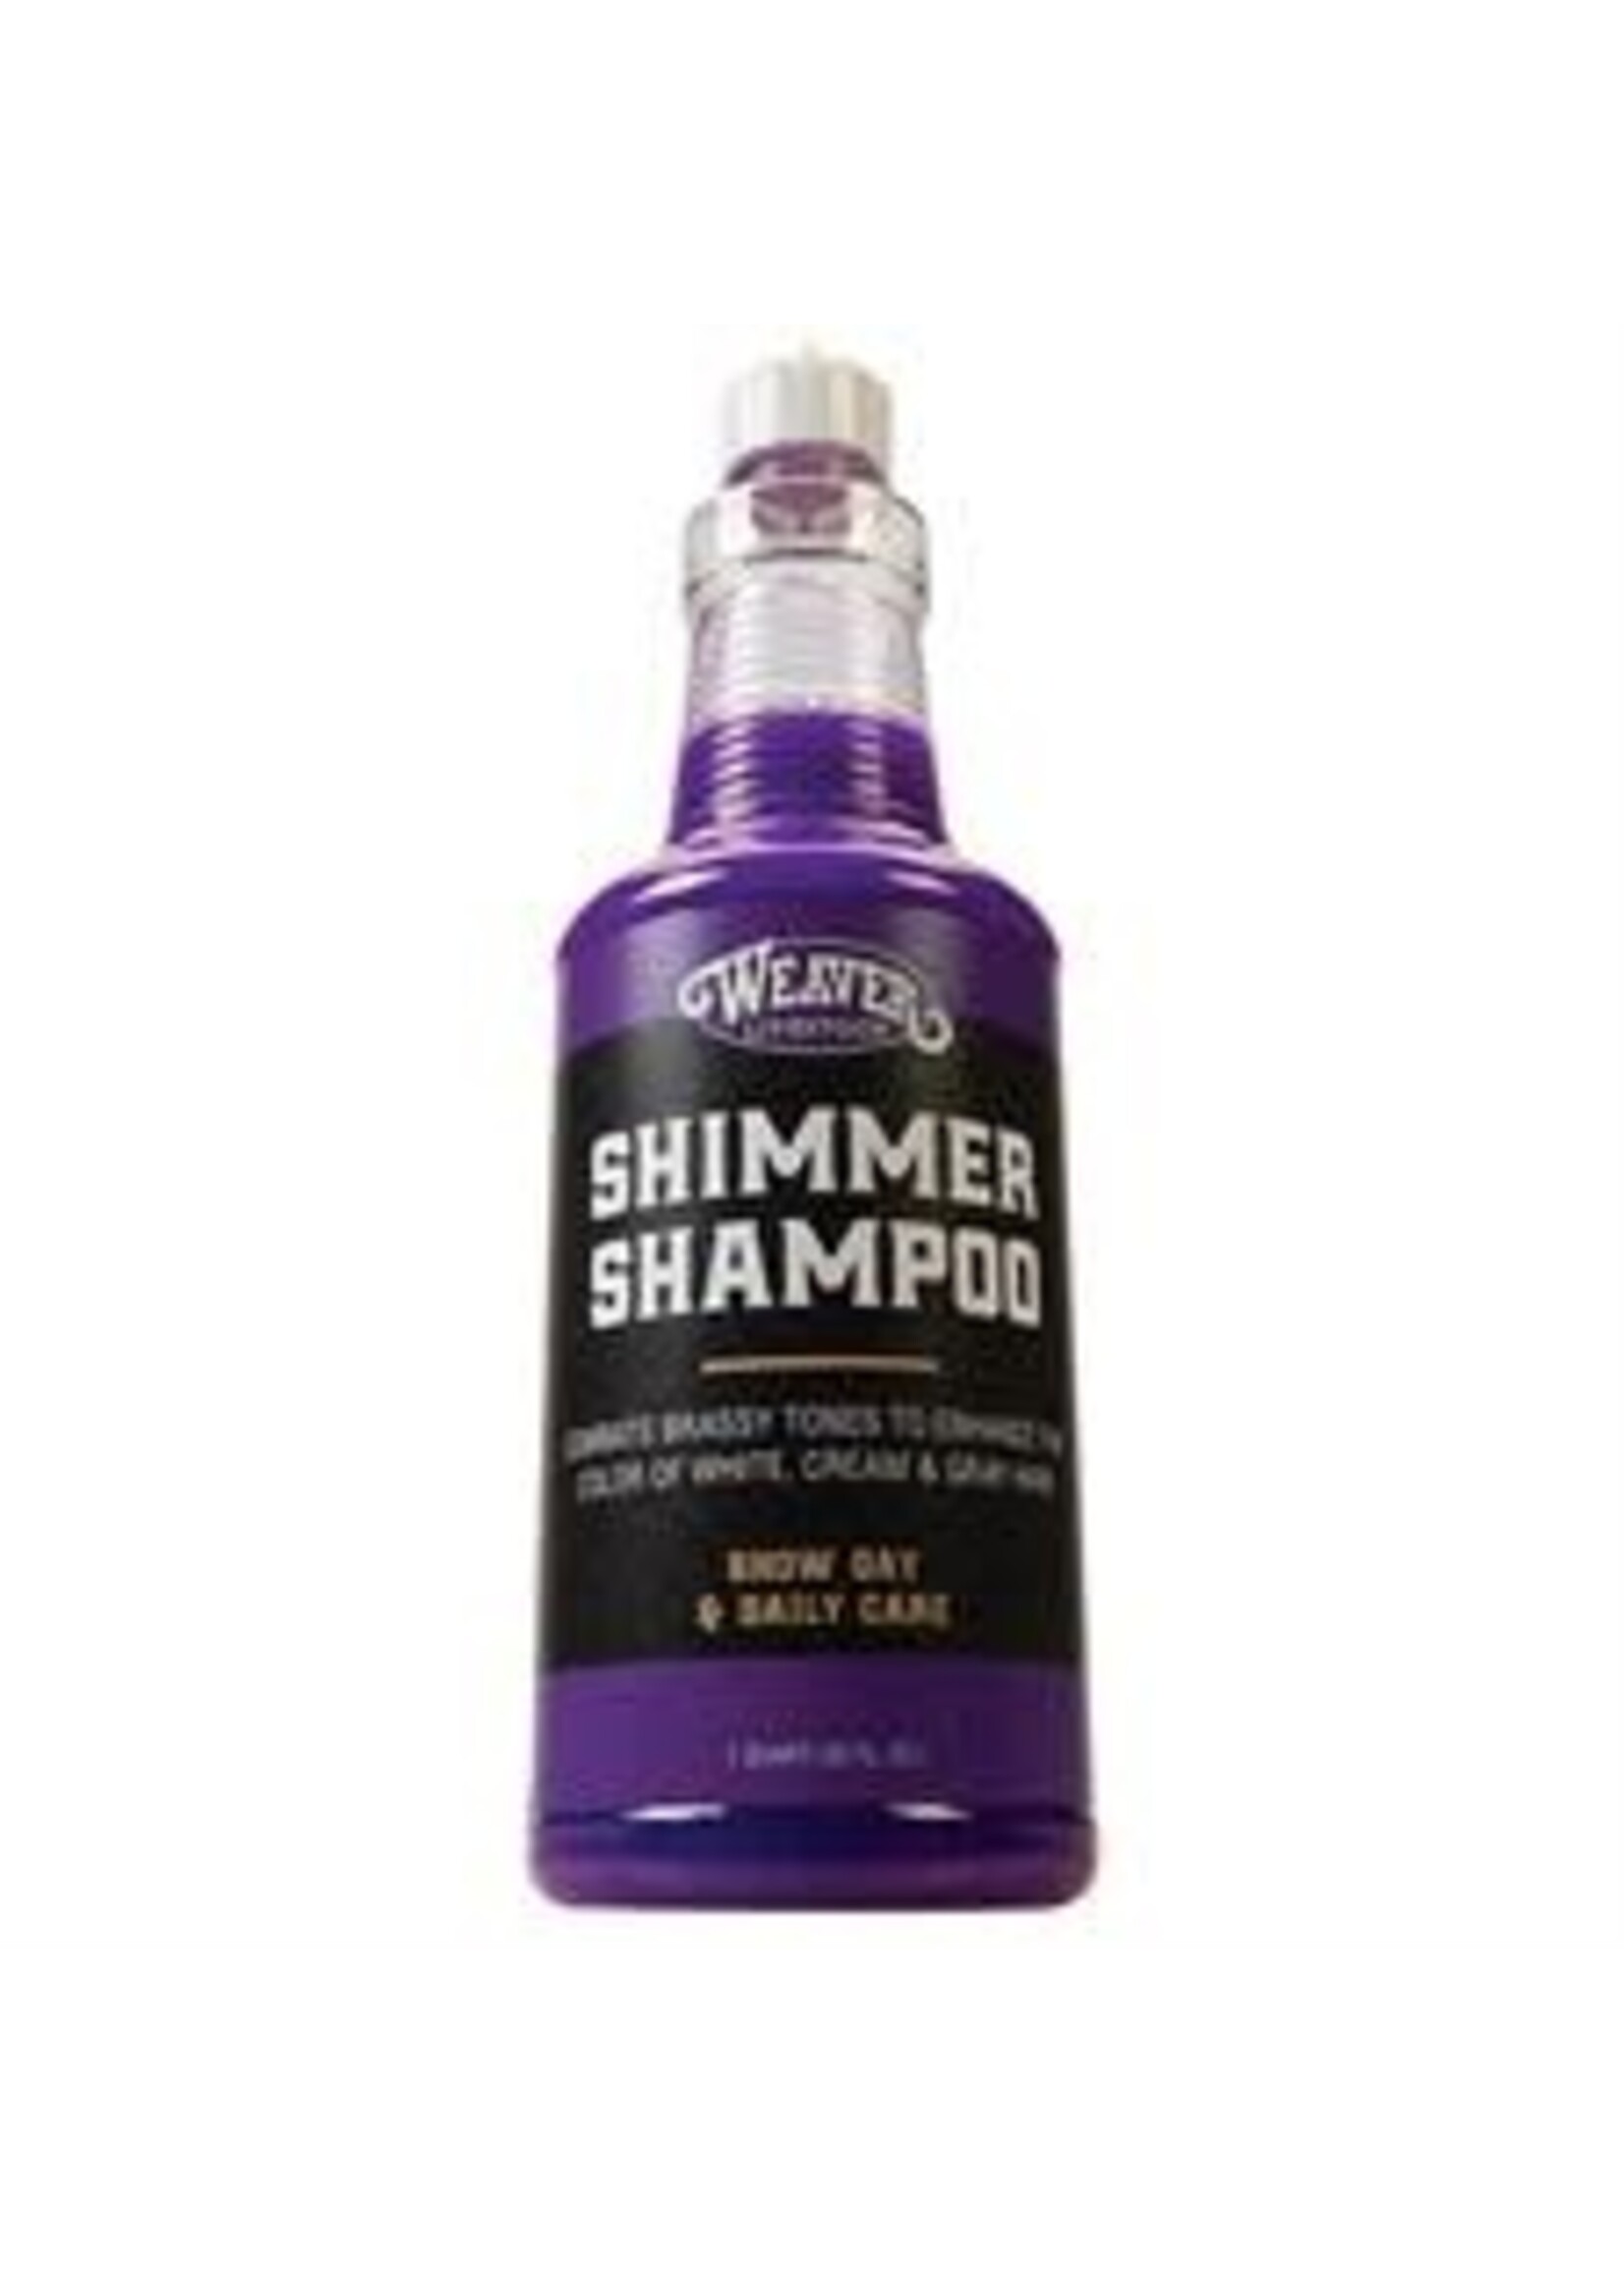 Weaver Livestock Weaver's Shimmer Shampoo 1quart